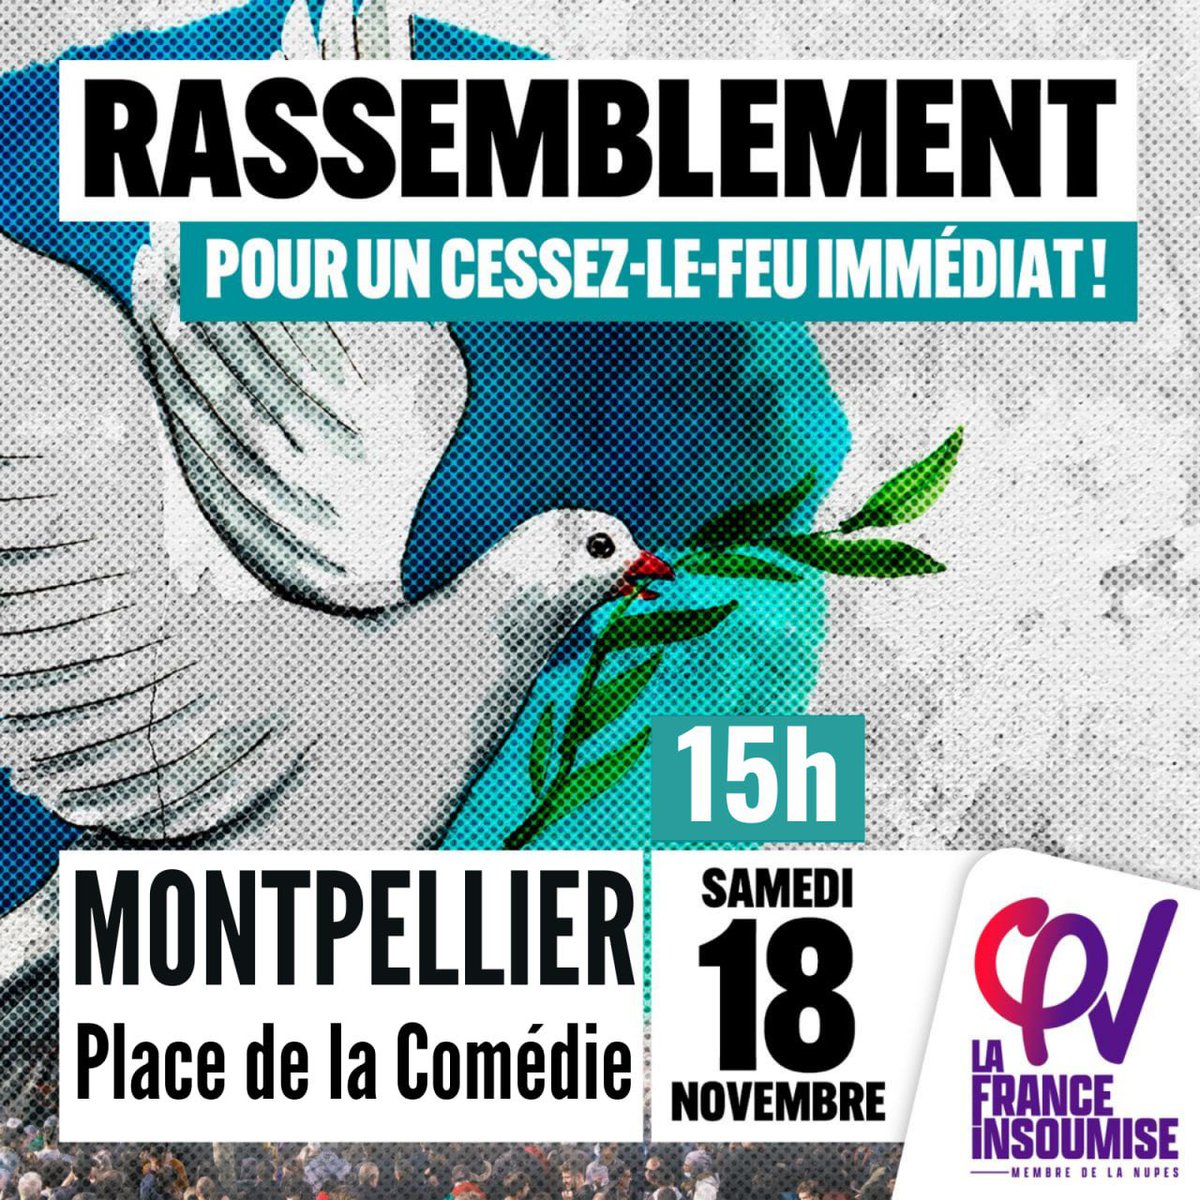 🔵 On se retrouve demain à 15h Place de la Comédie à Montpellier pour le cessez-le-feu immédiat et la paix